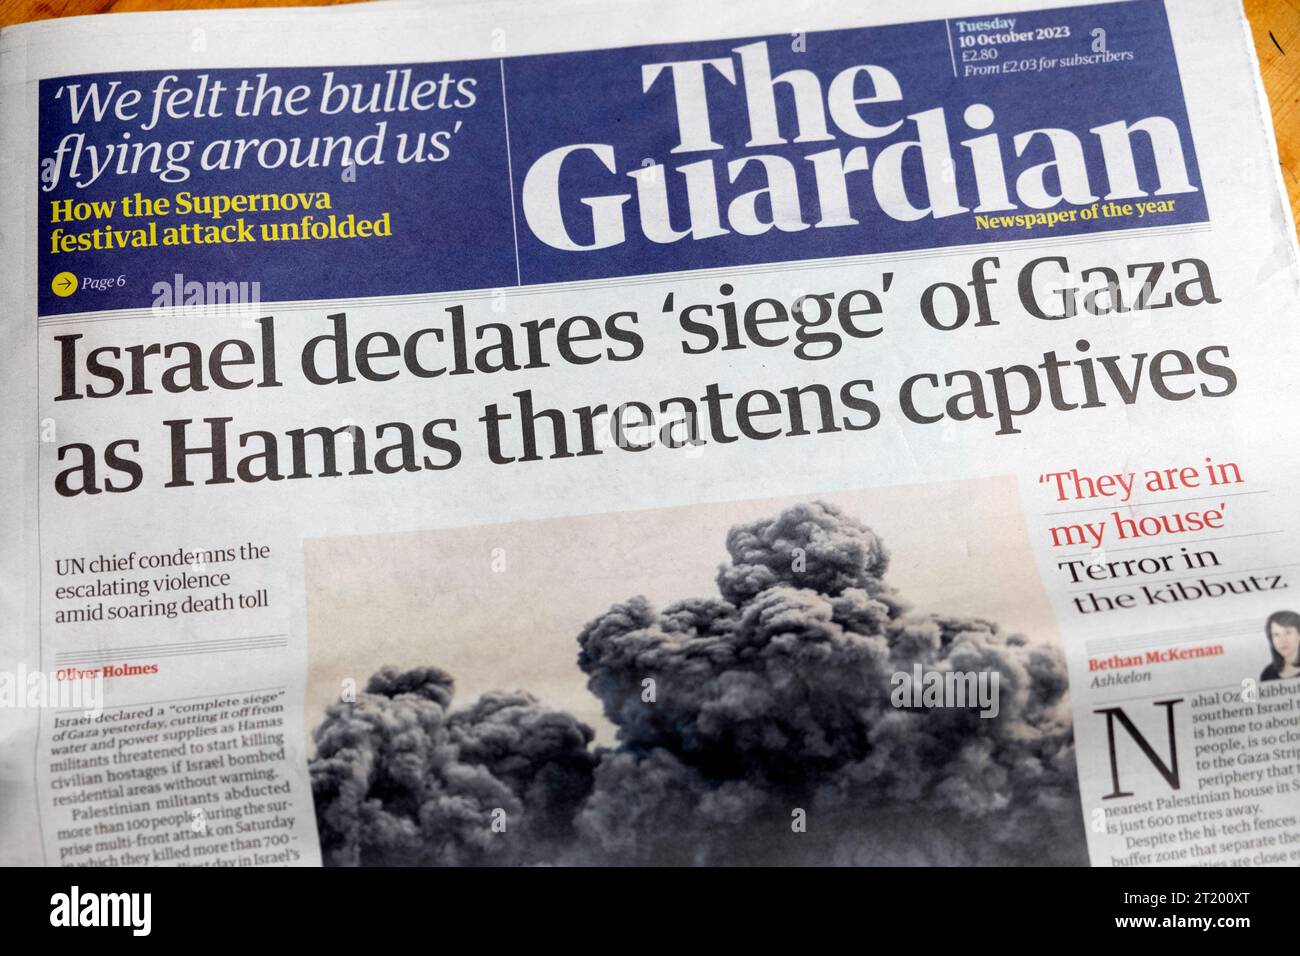 "Israele dichiara "assedio” di Gaza mentre Hamas minaccia i prigionieri" prima pagina del quotidiano Guardian: Guerra israeliana e palestinese 10 ottobre 2023 Londra Regno Unito Foto Stock